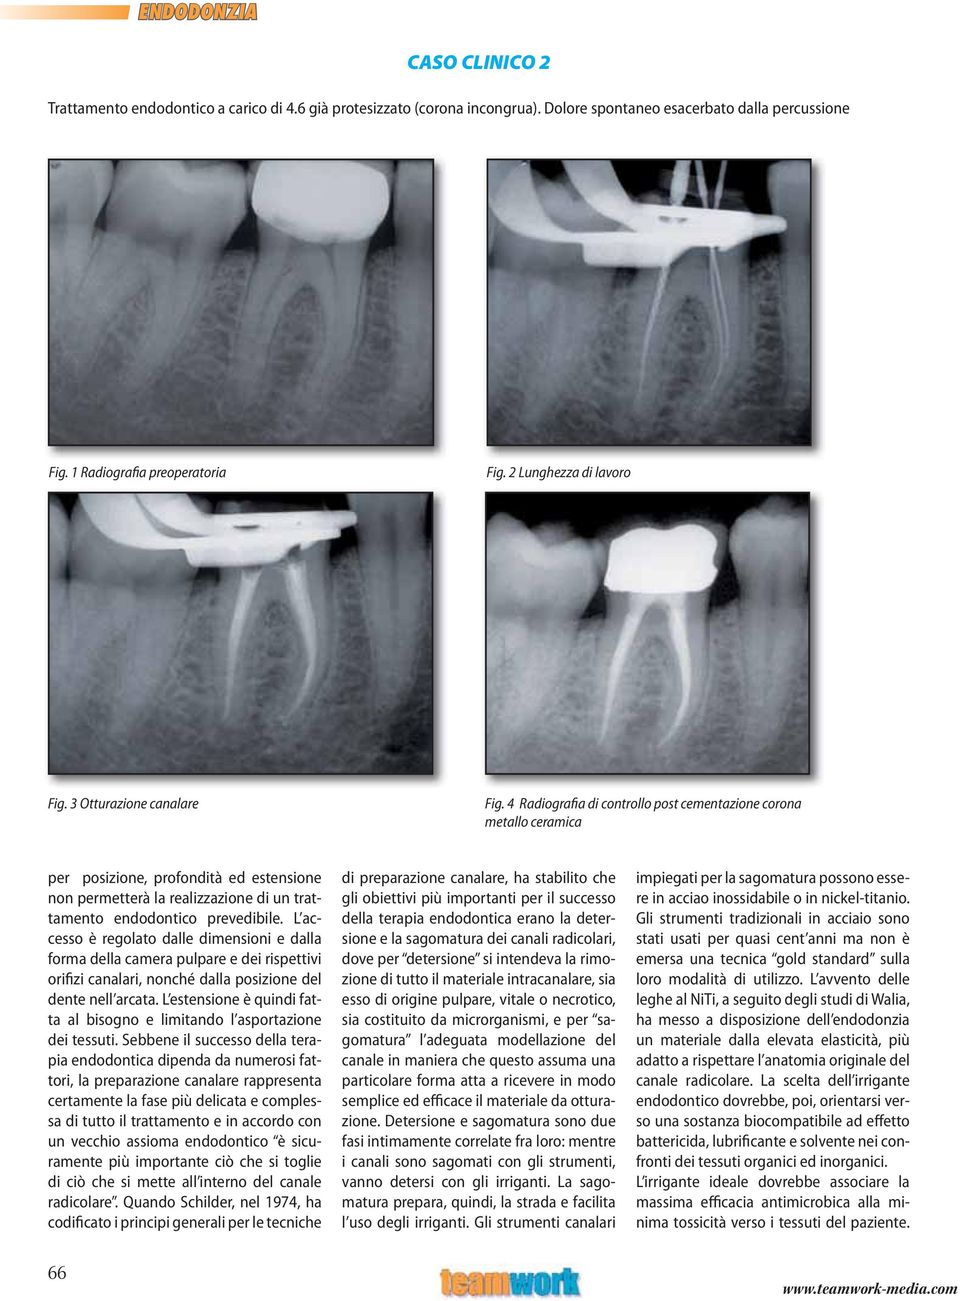 4 Radiografia di controllo post cementazione corona metallo ceramica per posizione, profondità ed estensione non permetterà la realizzazione di un trattamento endodontico prevedibile.